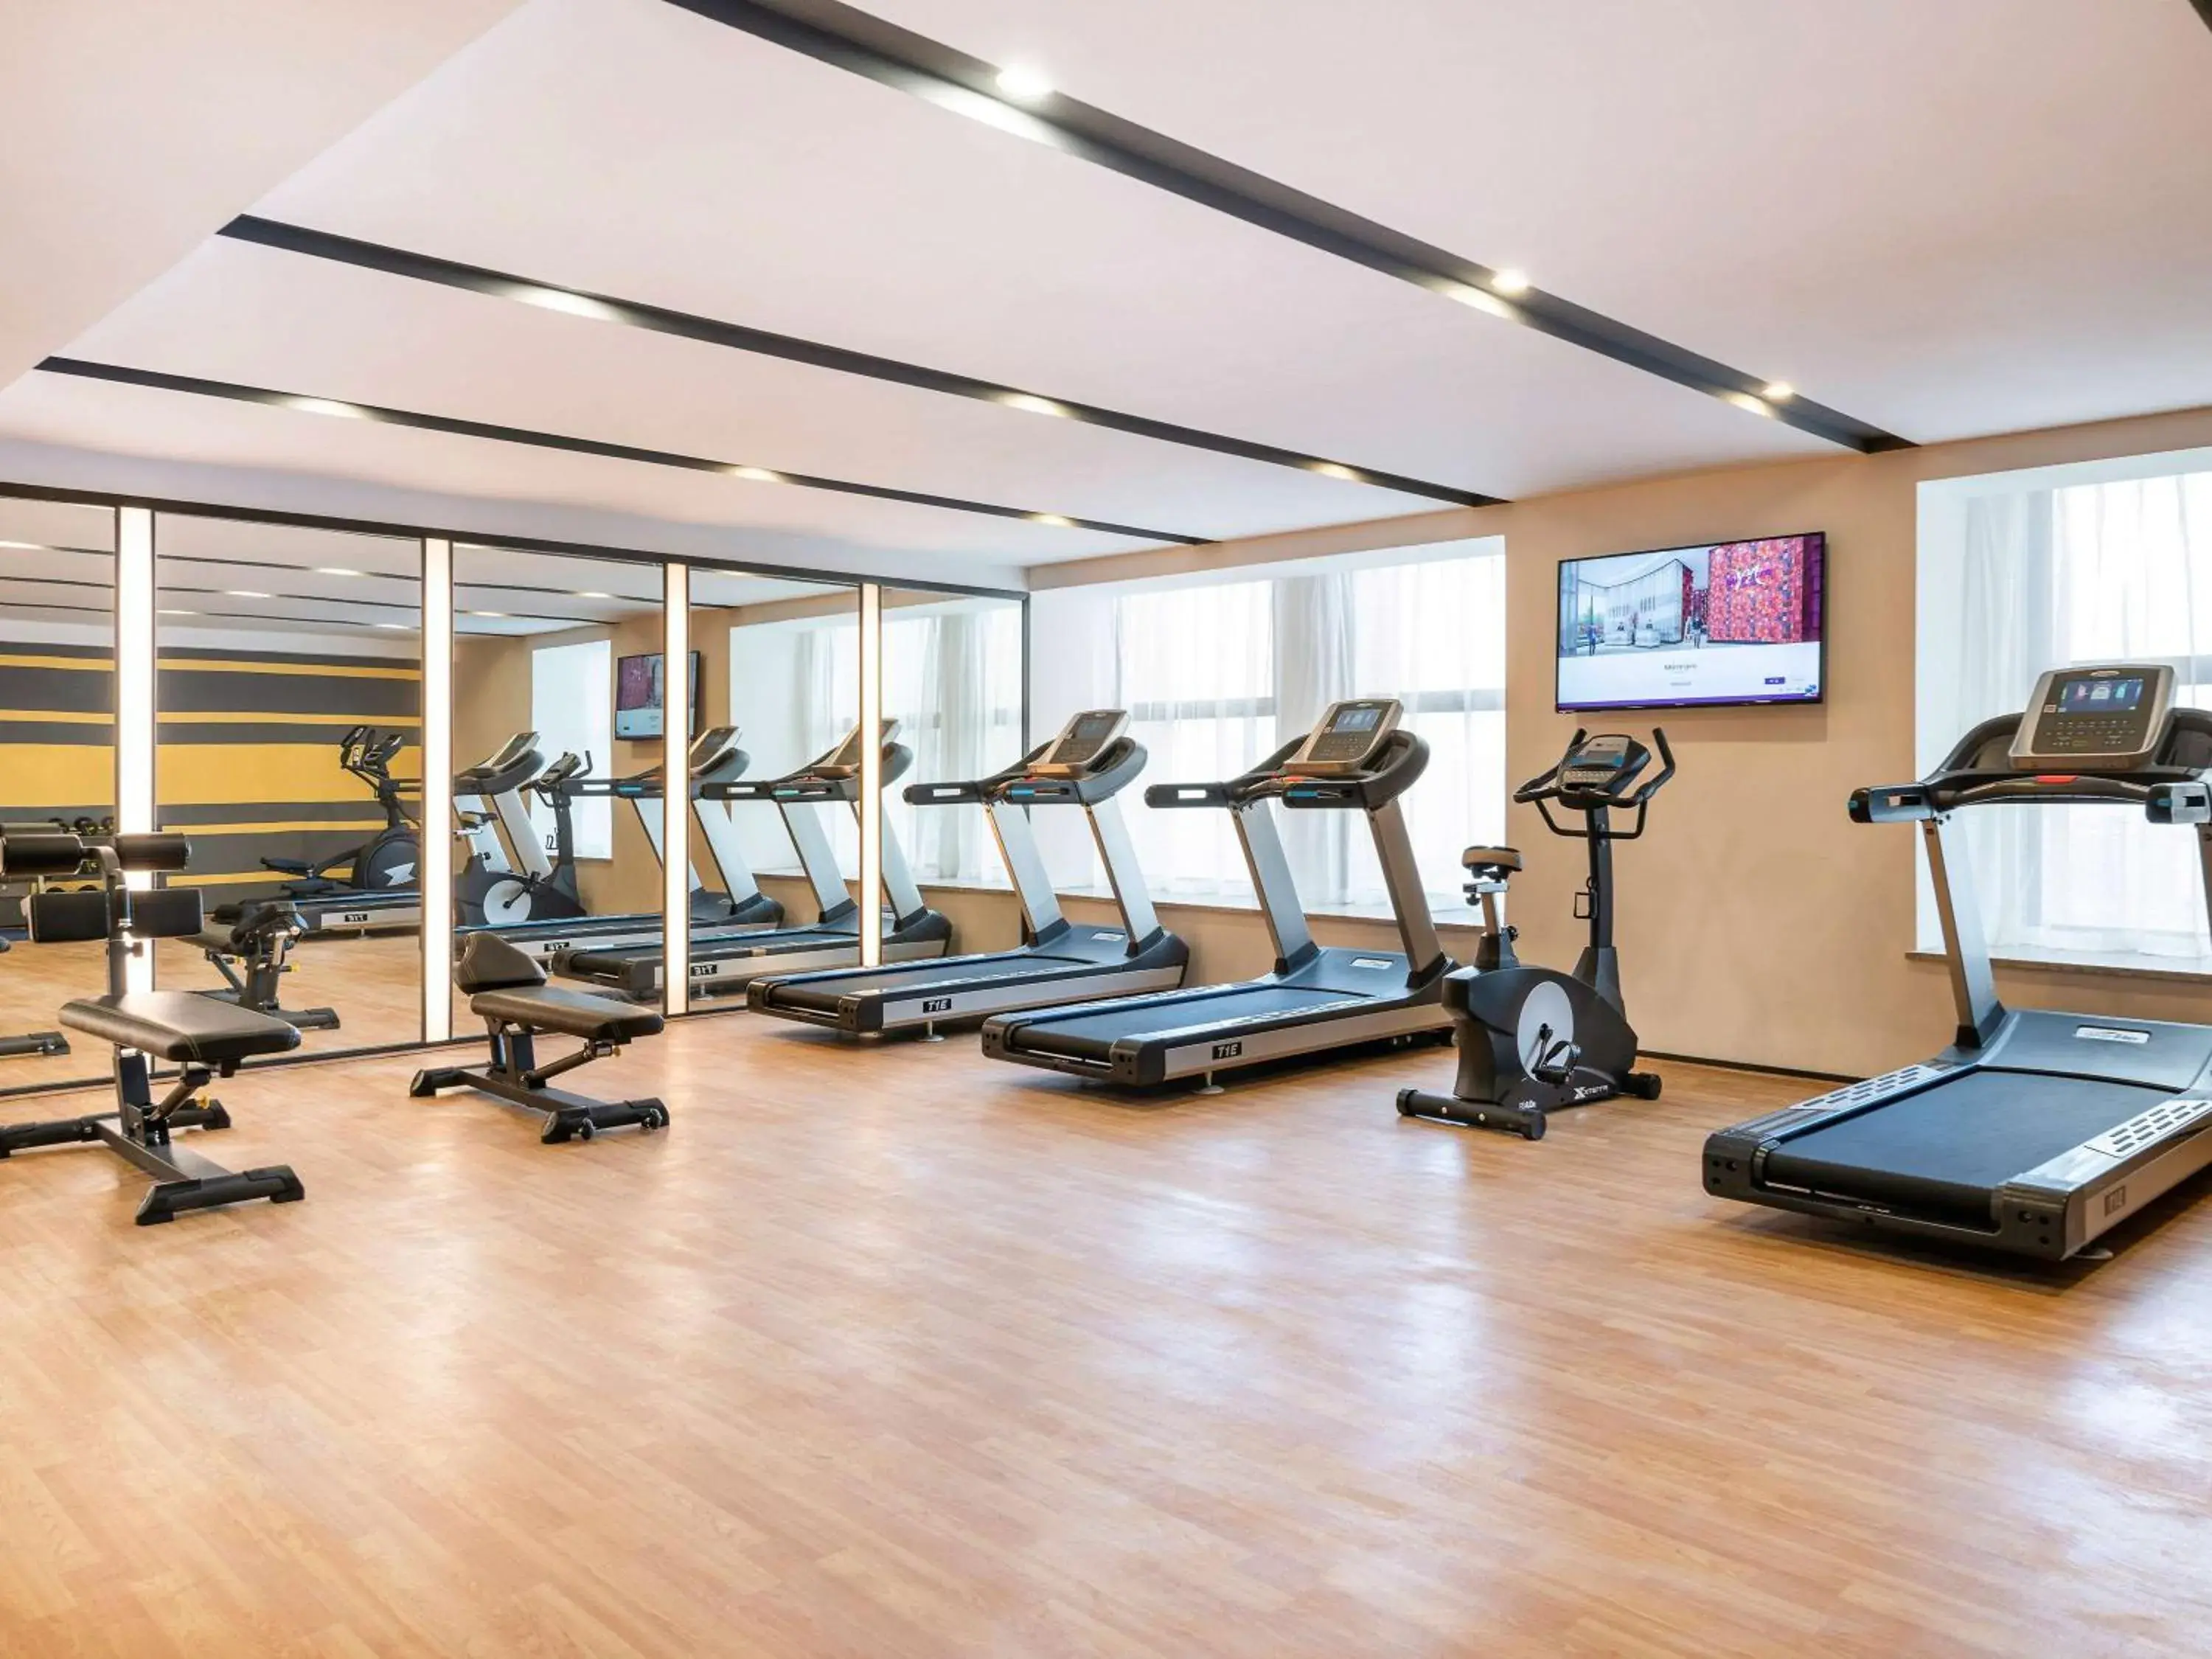 Fitness centre/facilities, Fitness Center/Facilities in Mercure Chengdu Huapaifang